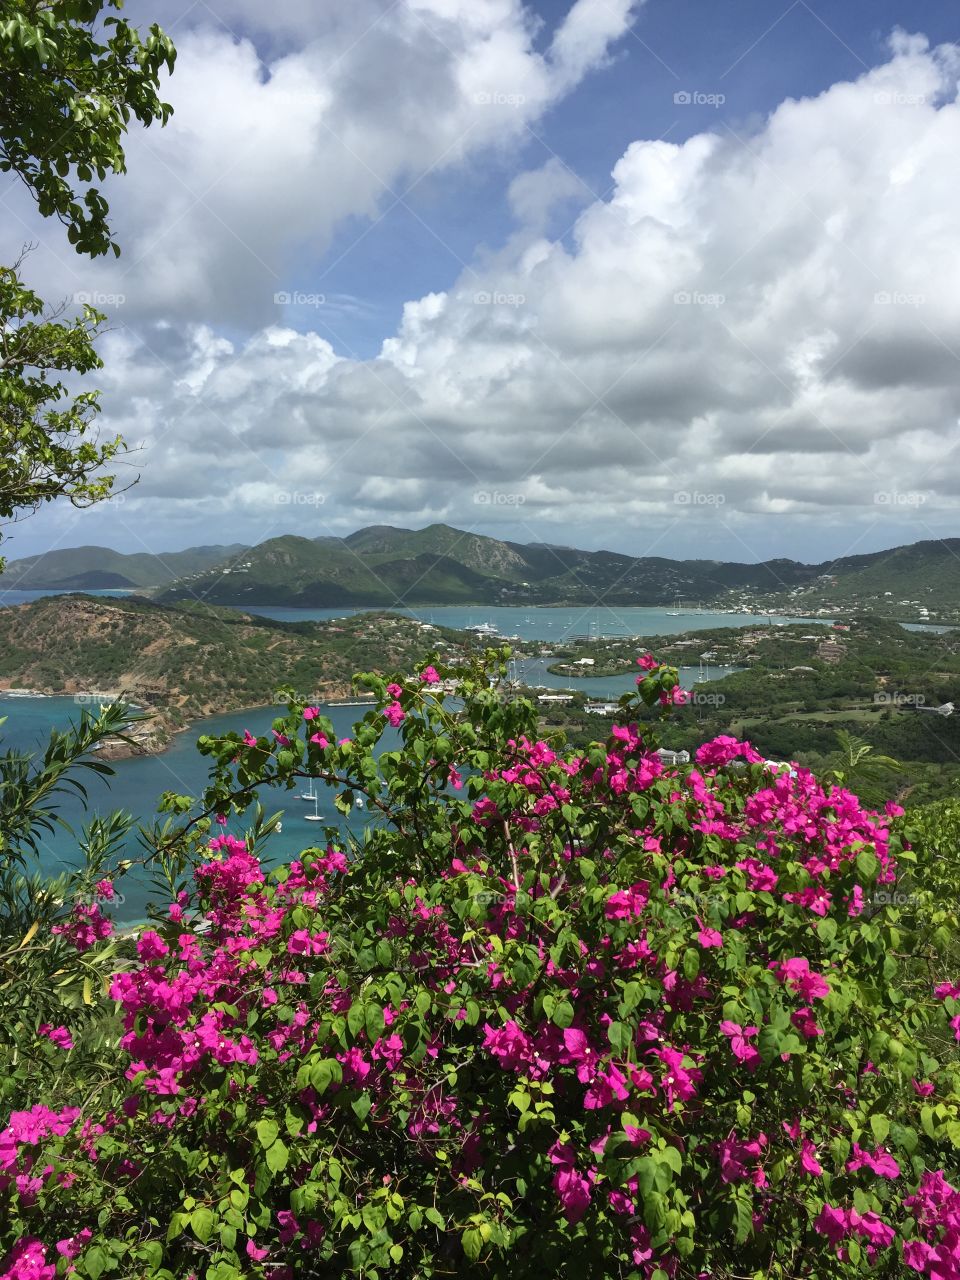 Barbuda scenic view